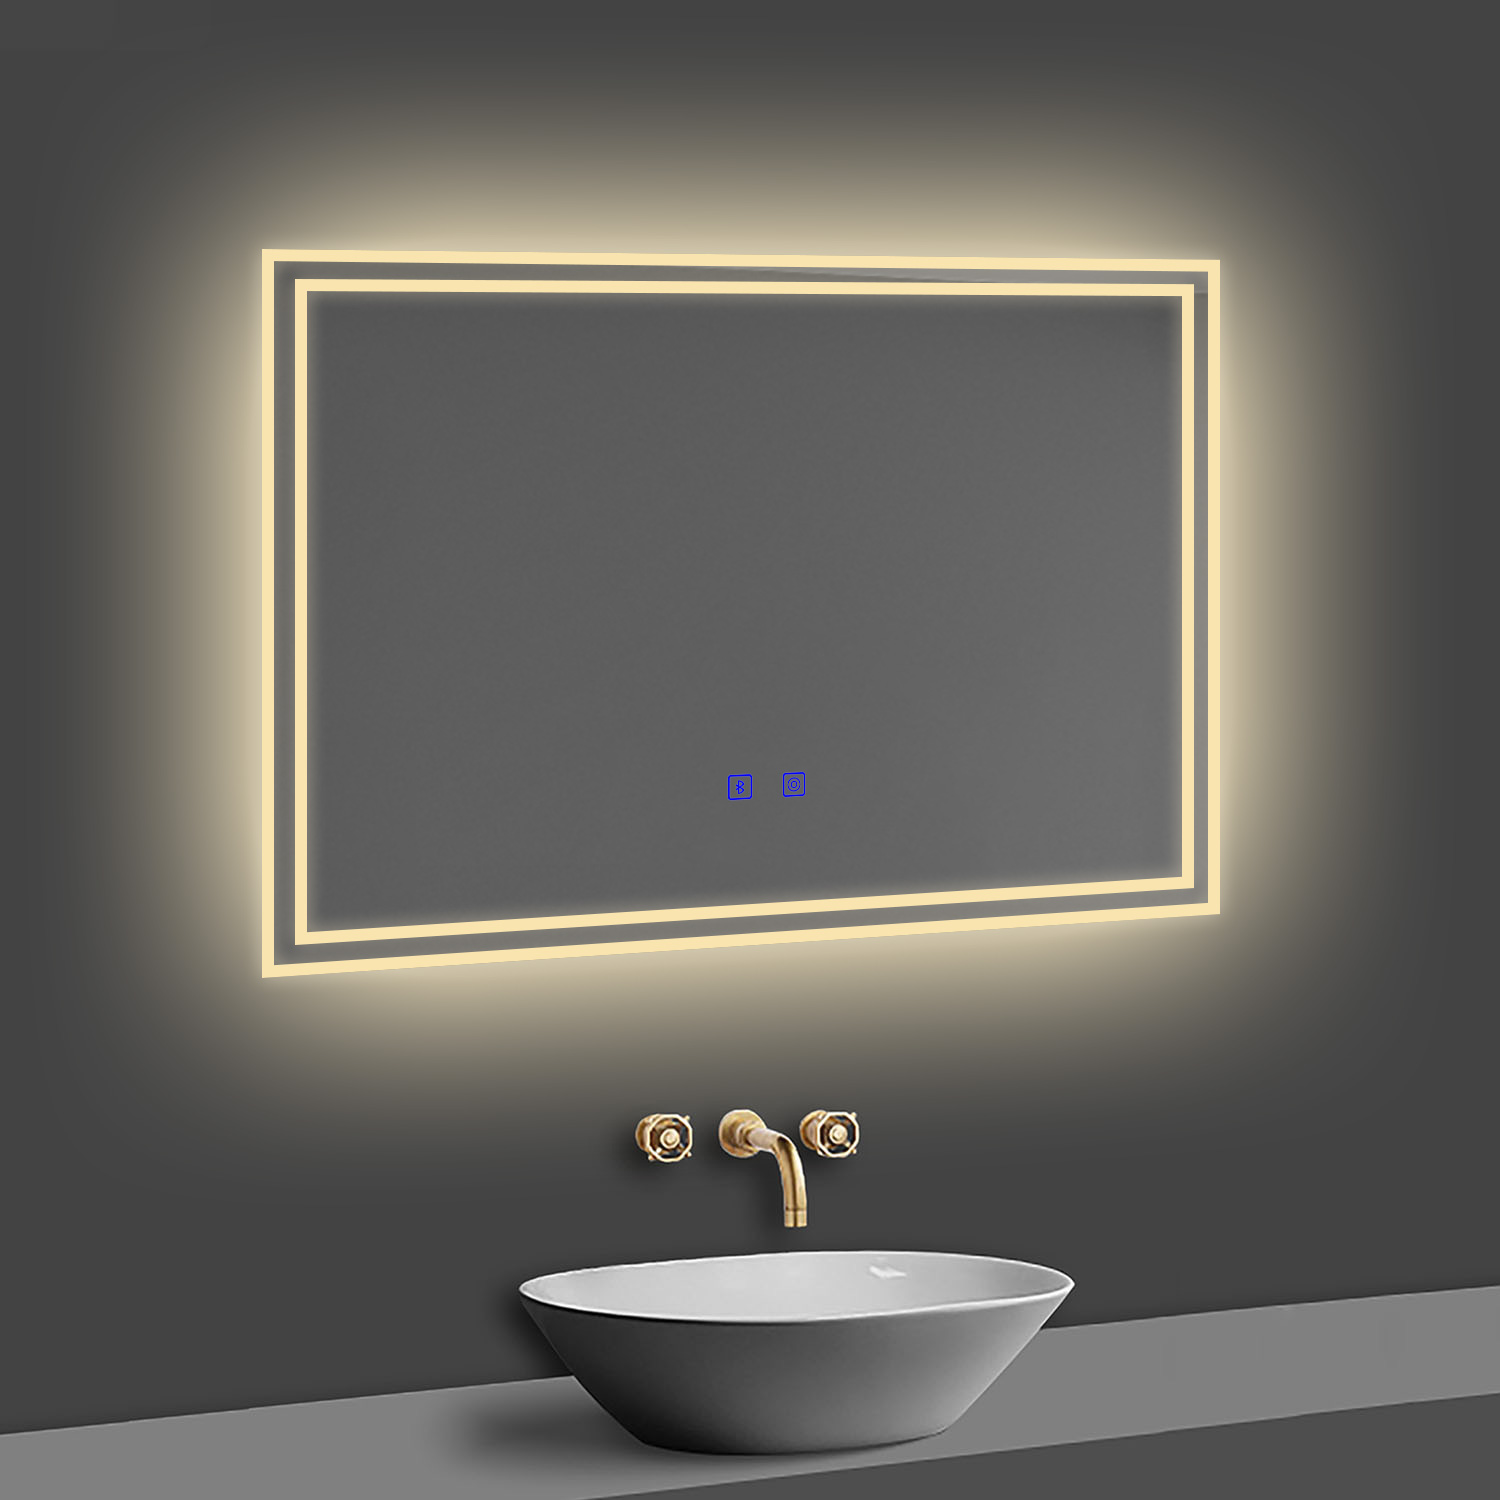 LED Badspiegel 80x60 cm Bluetooth TOUCH BESCHLAGFREI Wandspiegel Kalt/Neutral/Warmweiß ,Dimmbar